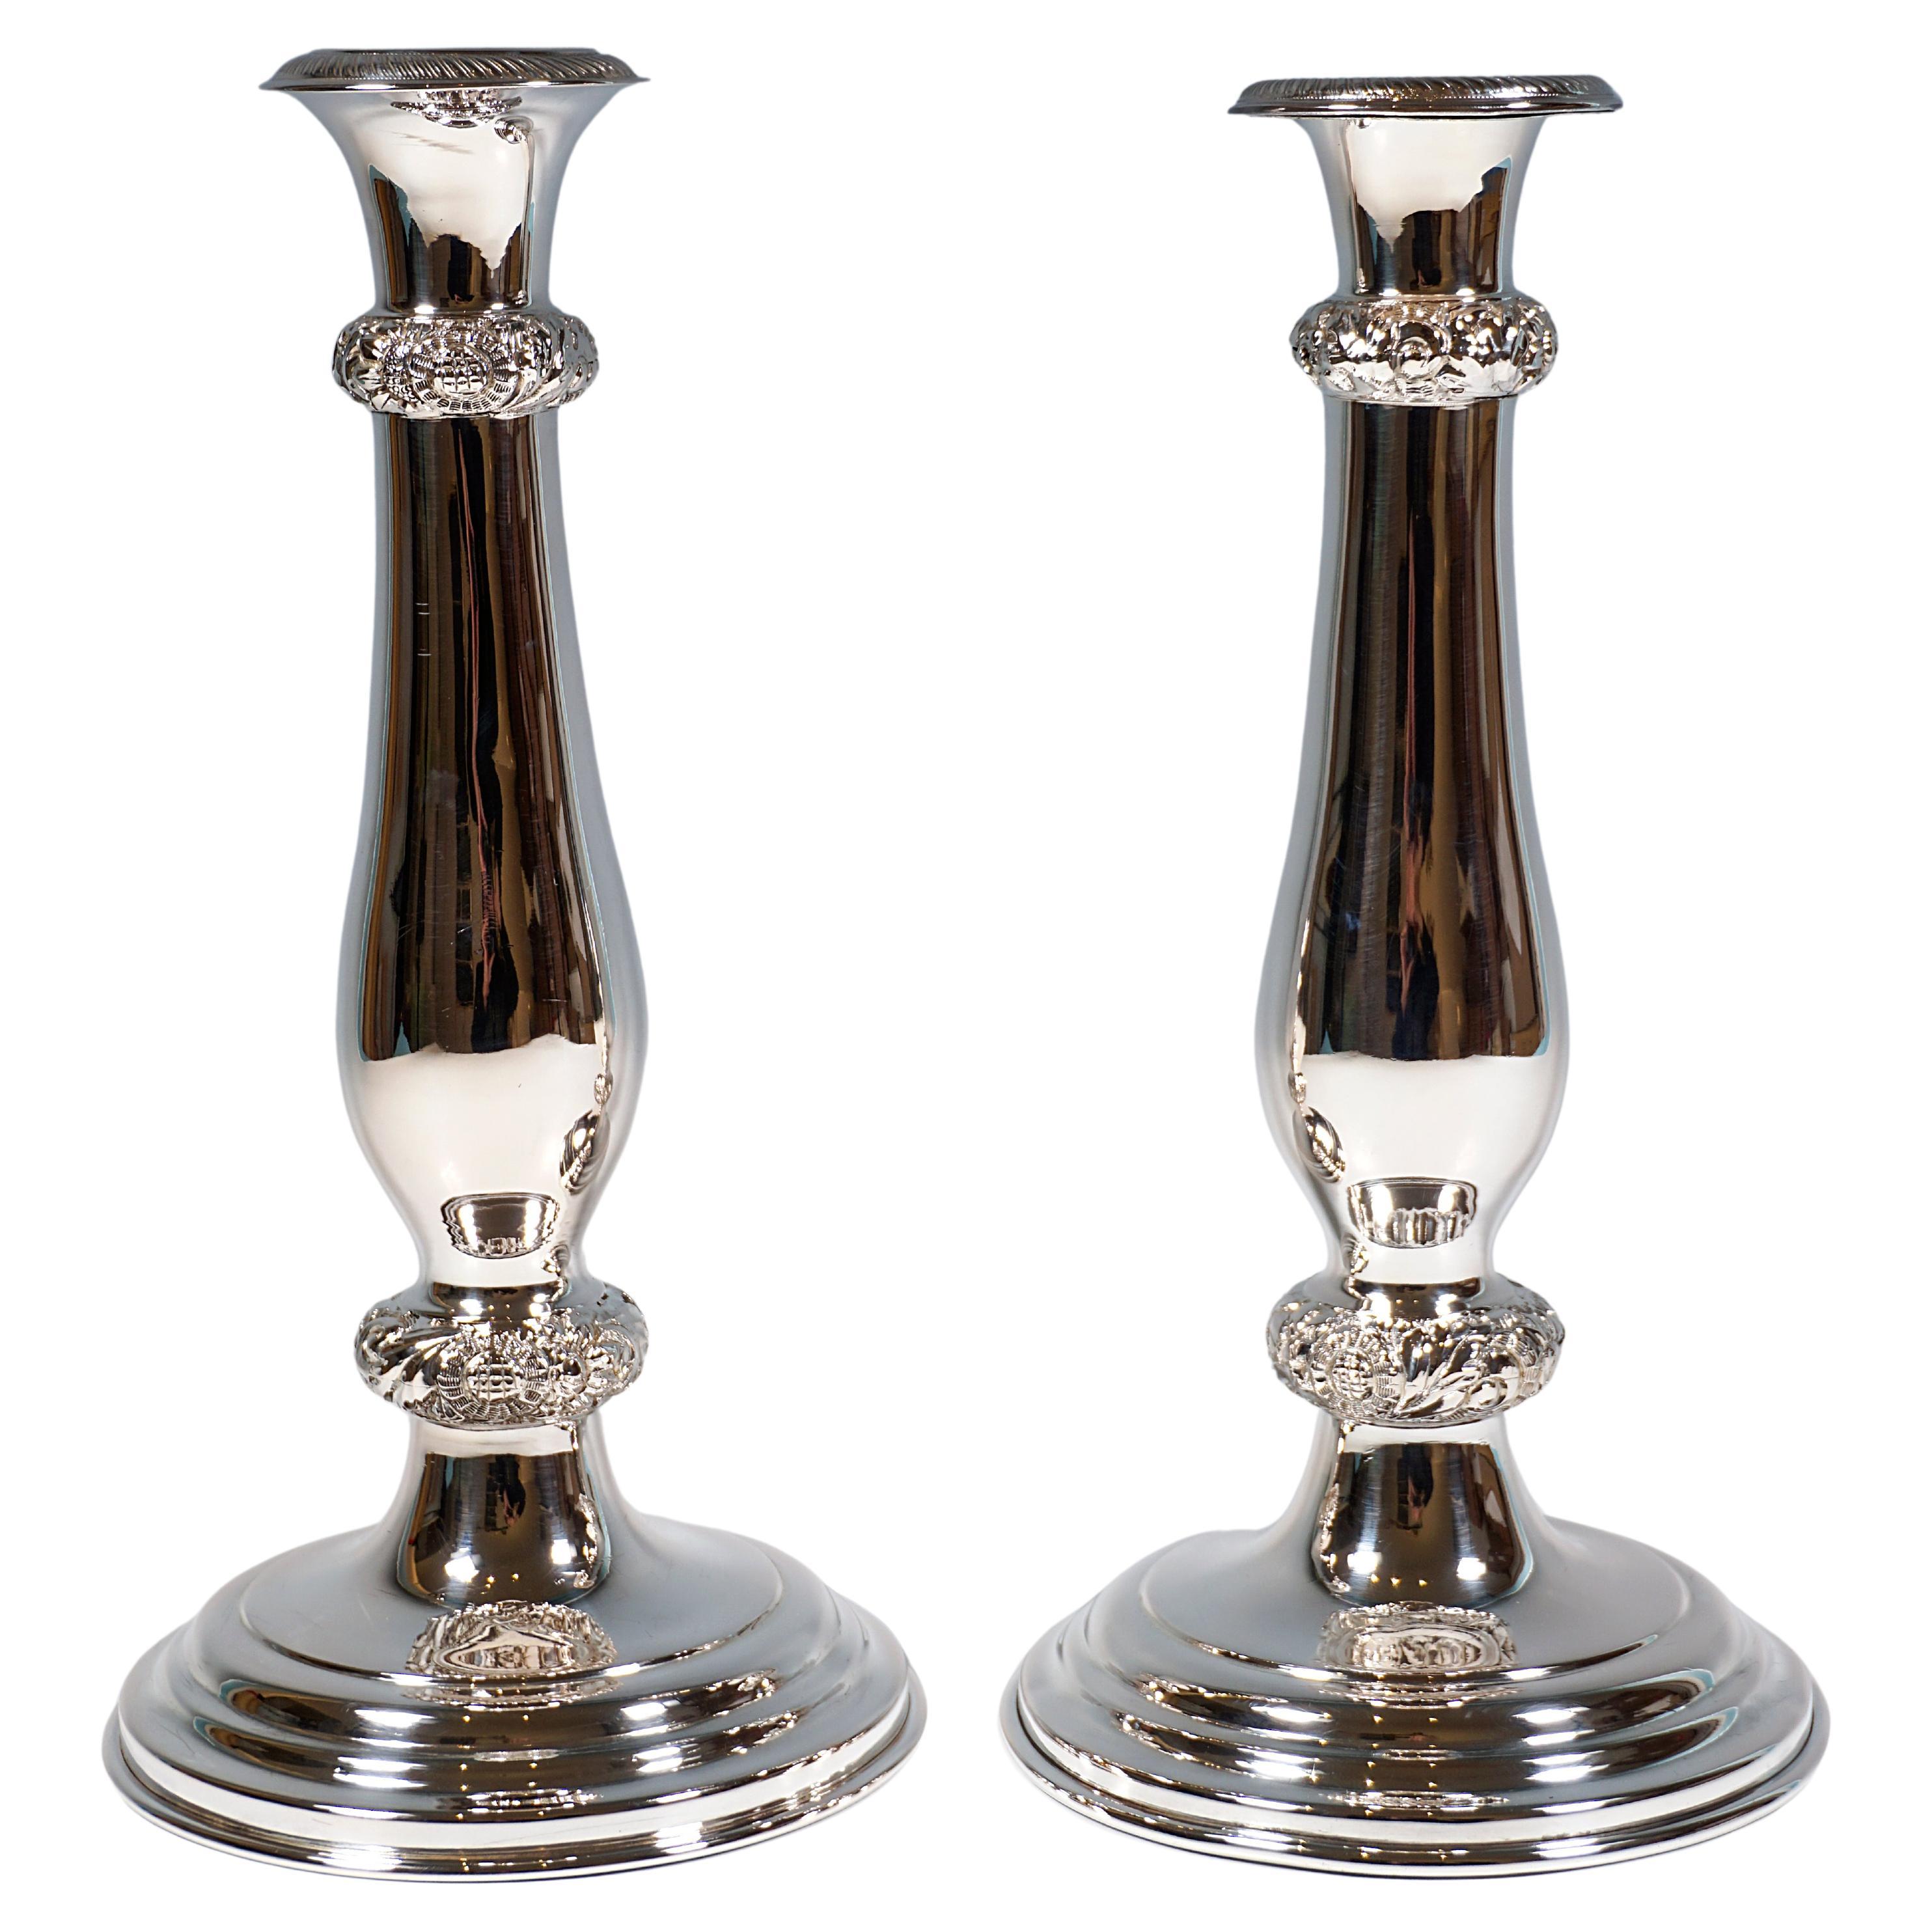 Paar antike Wiener Biedermeier-Kerzenhalter aus Silber, datiert 1844